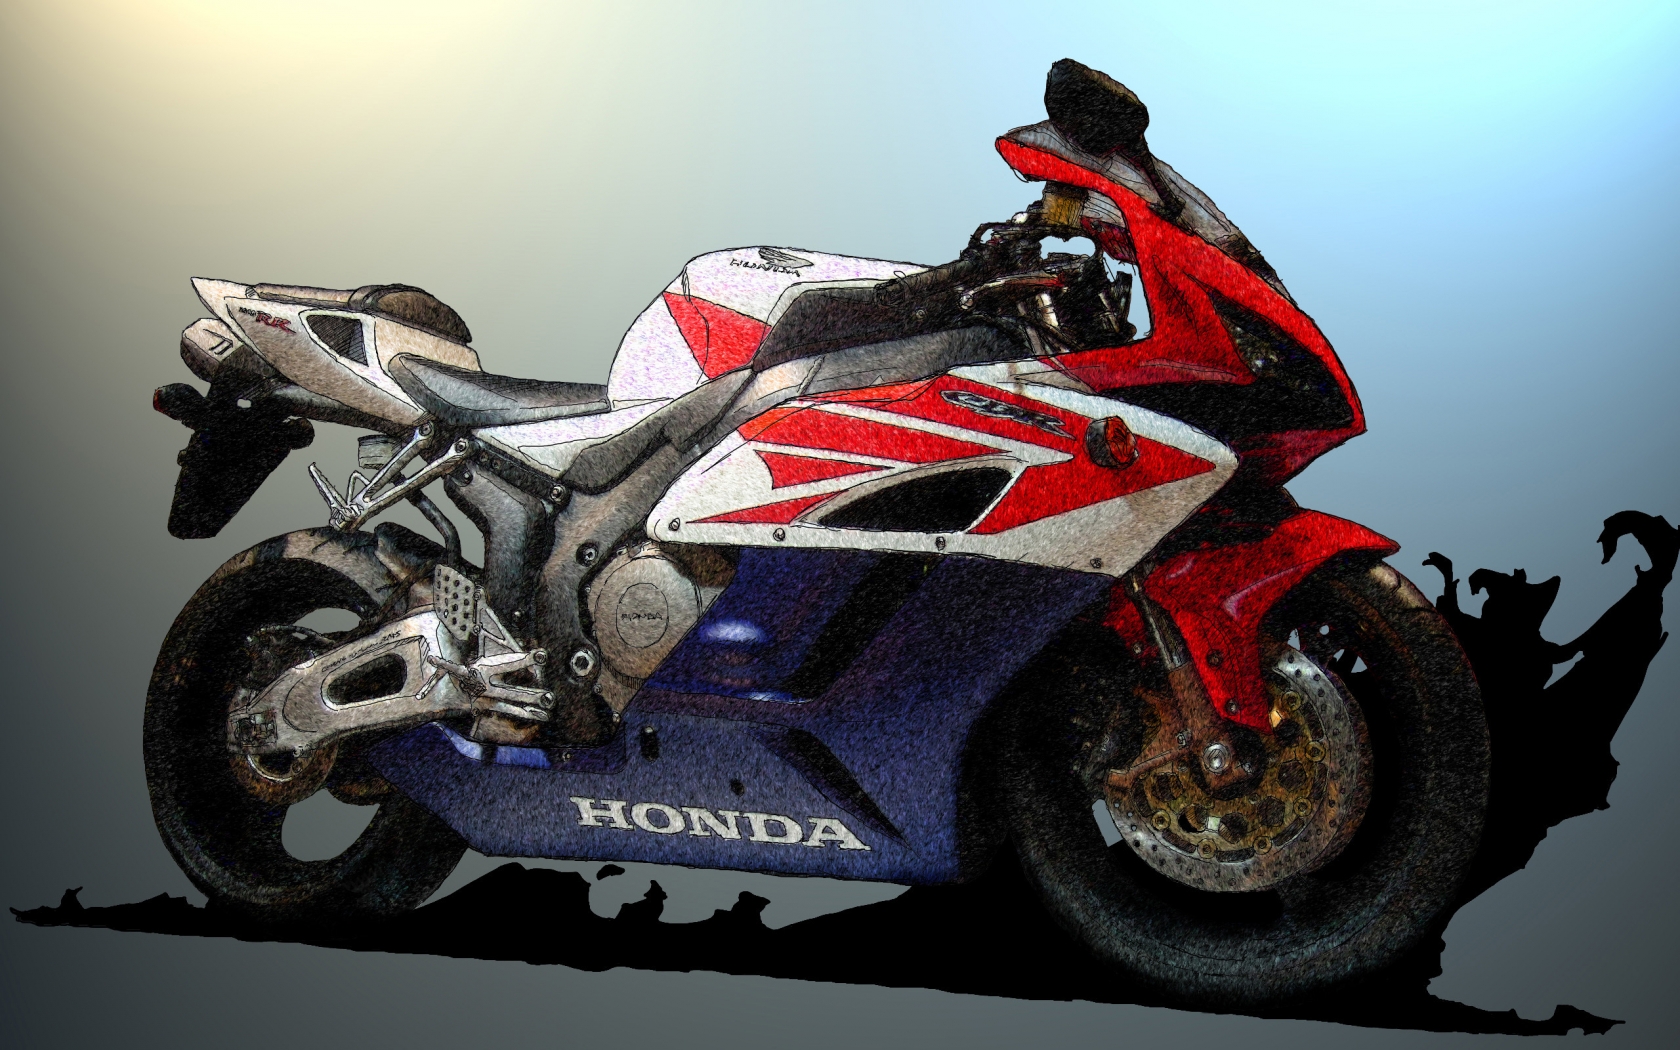 Honda CBR Sketch for 1680 x 1050 widescreen resolution